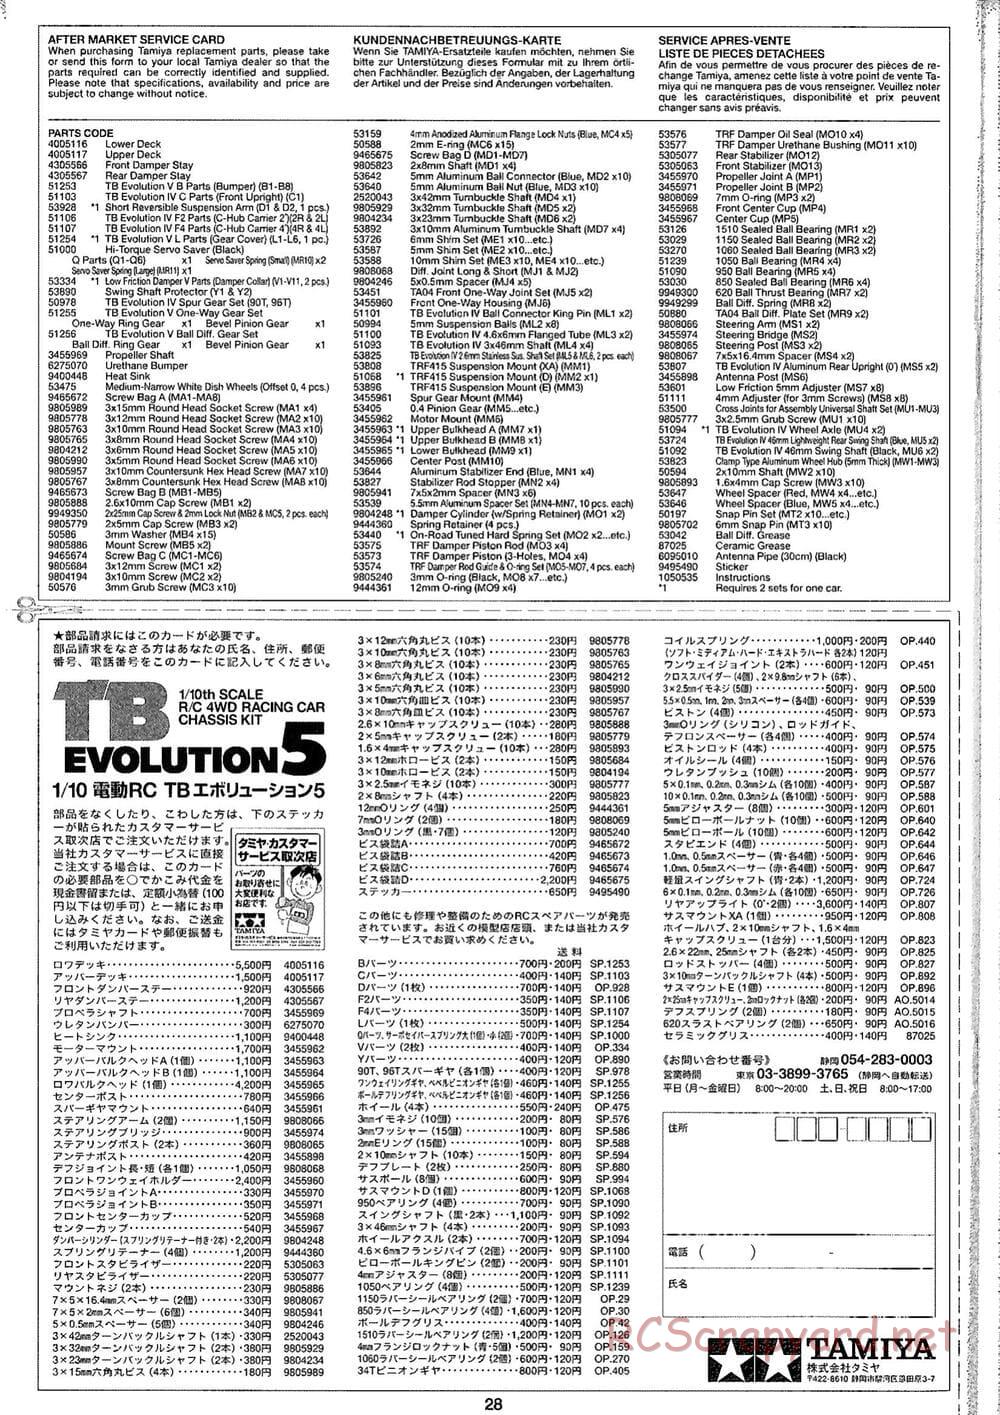 Tamiya - TB Evolution V Chassis - Manual - Page 28